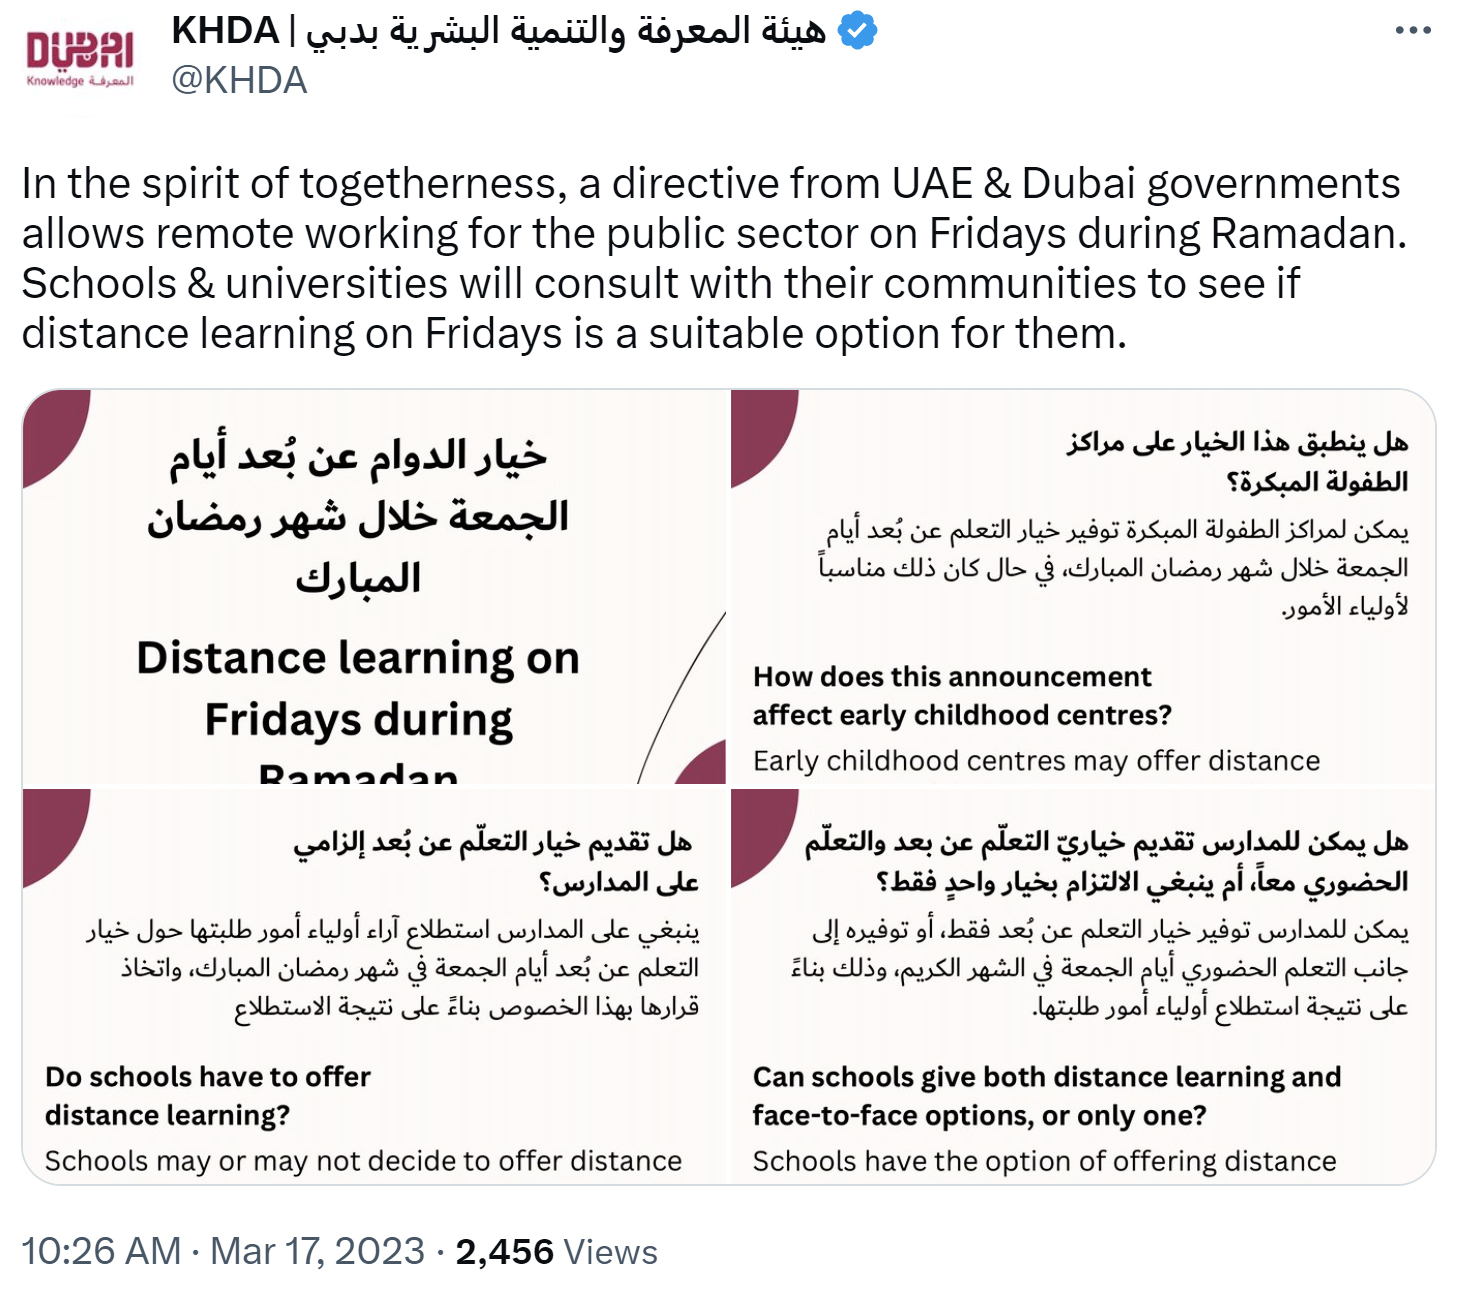 KHDA kündigt an, dass Familien die Möglichkeit erhalten müssen, dass Schüler während des Ramadan den Freitag zu Hause verbringen